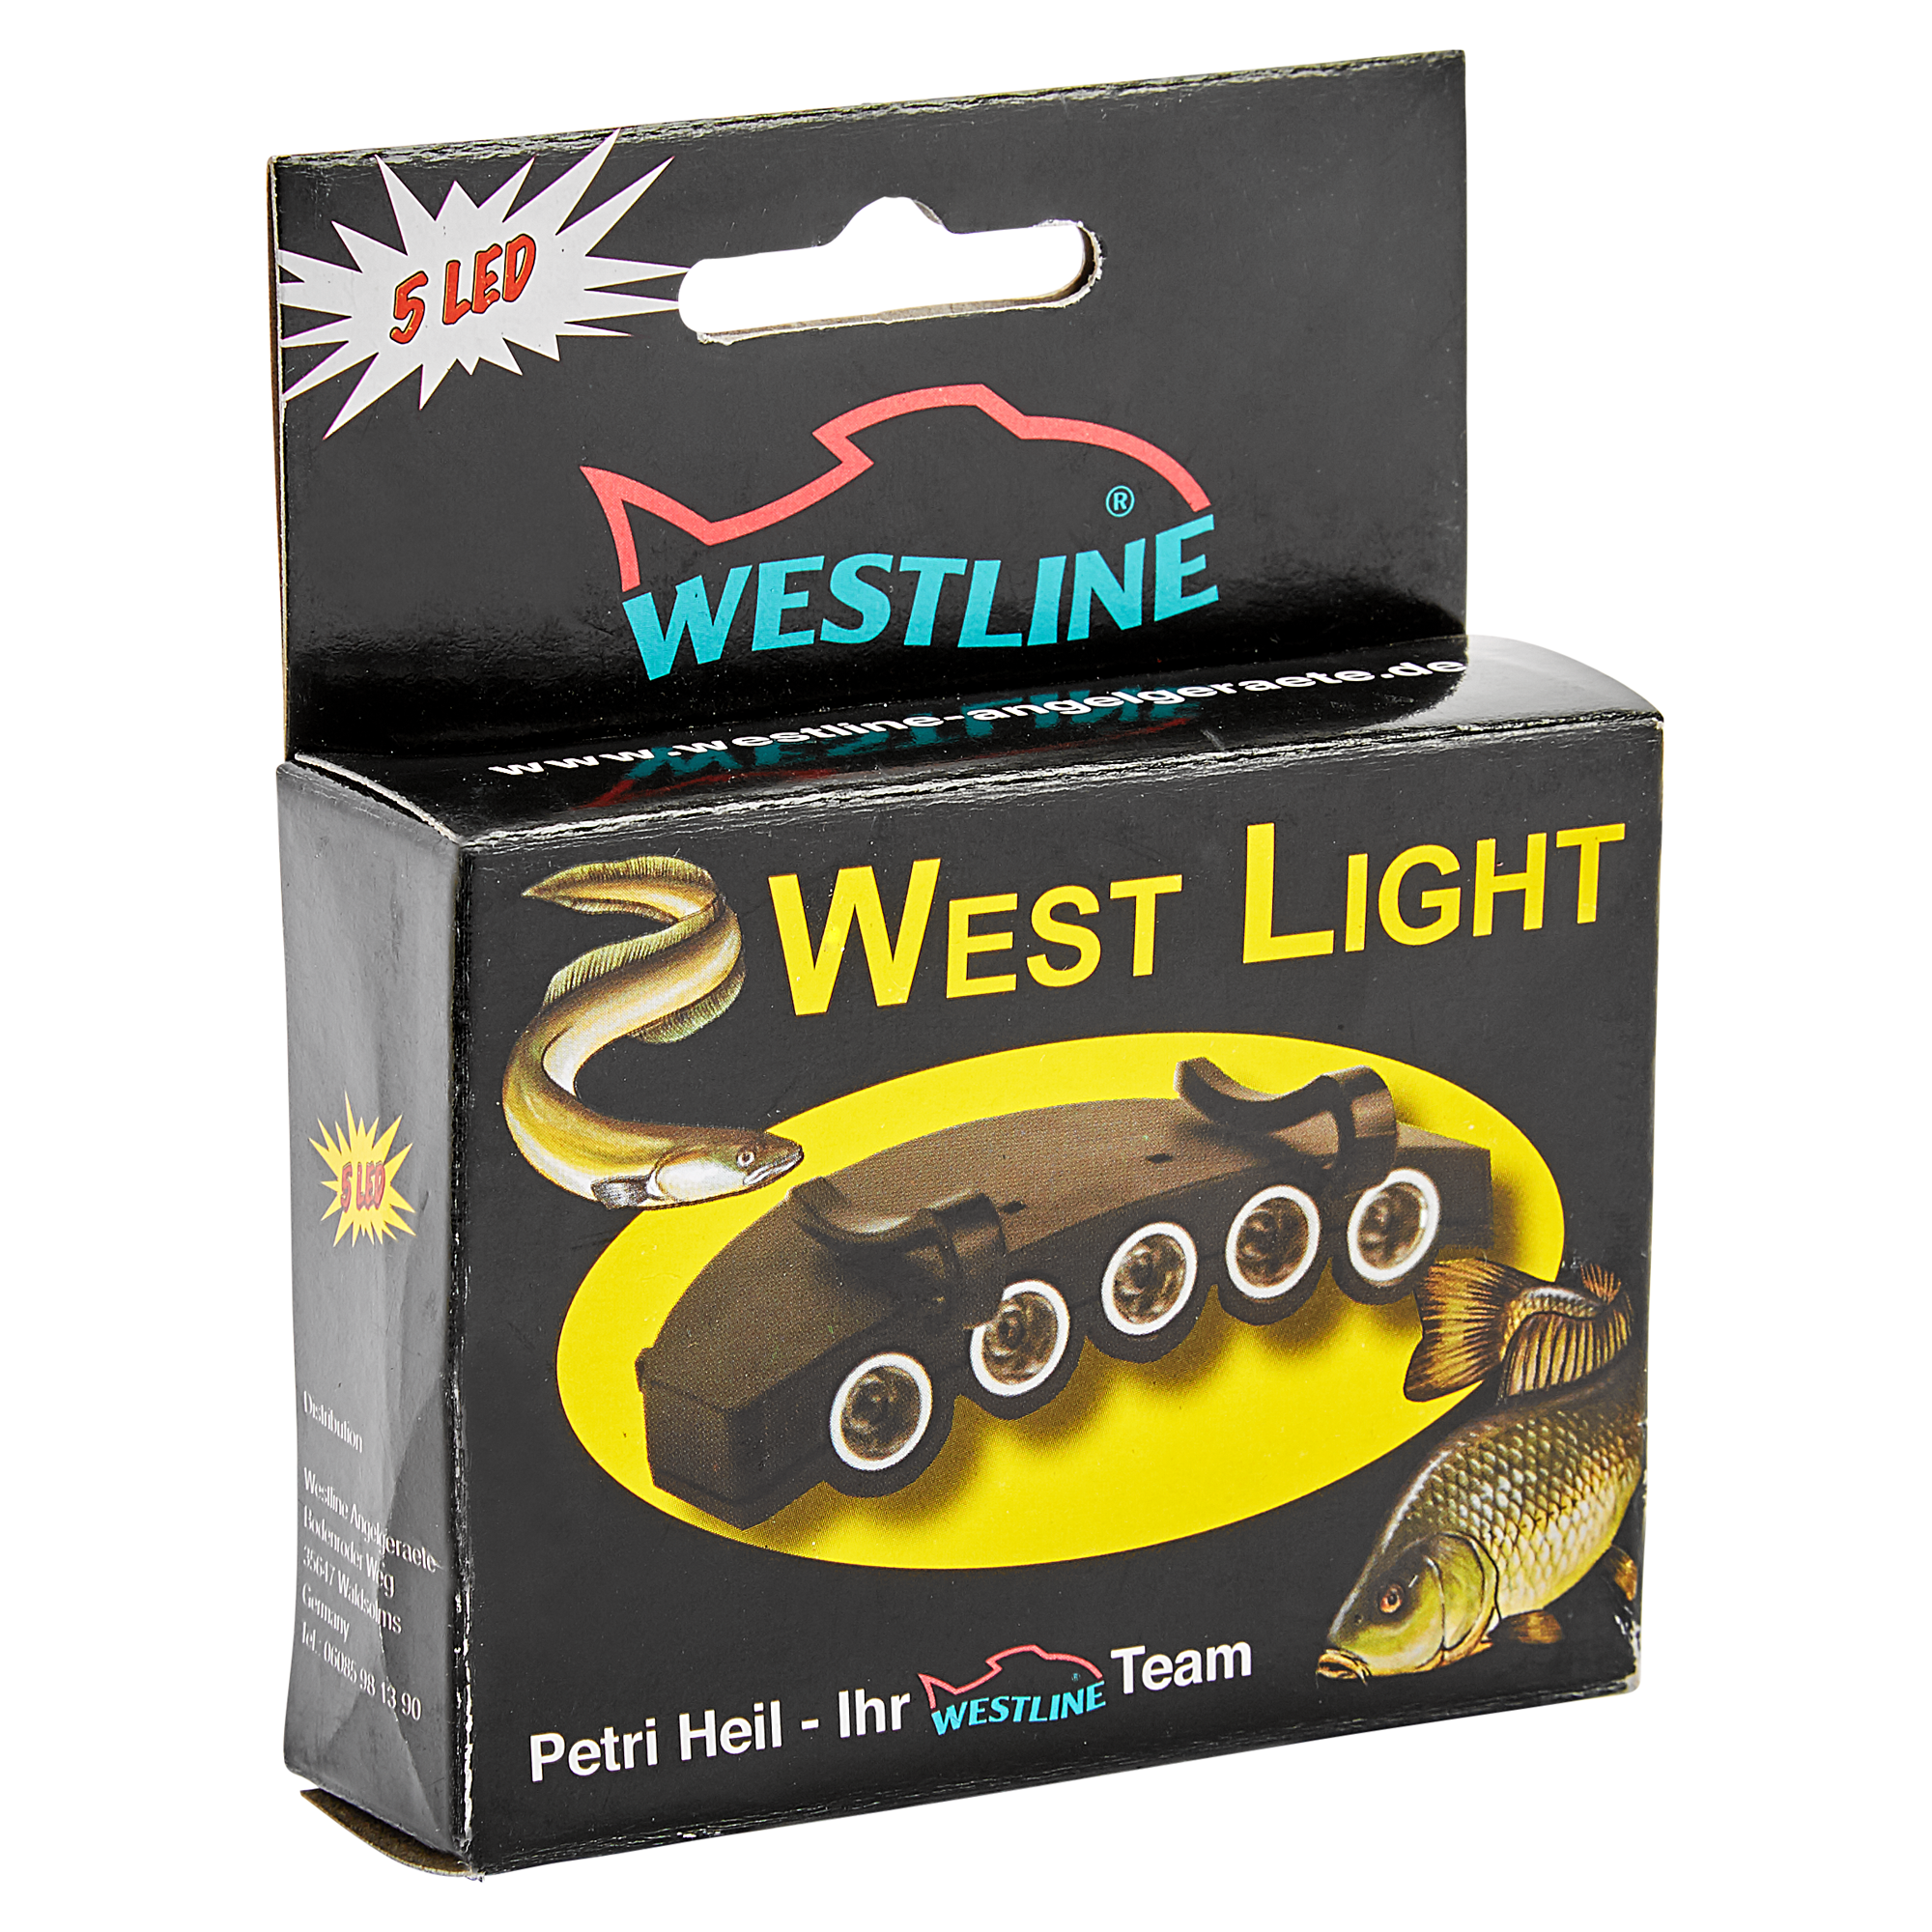 Lampe für Mützenschirm "West Light" + product picture